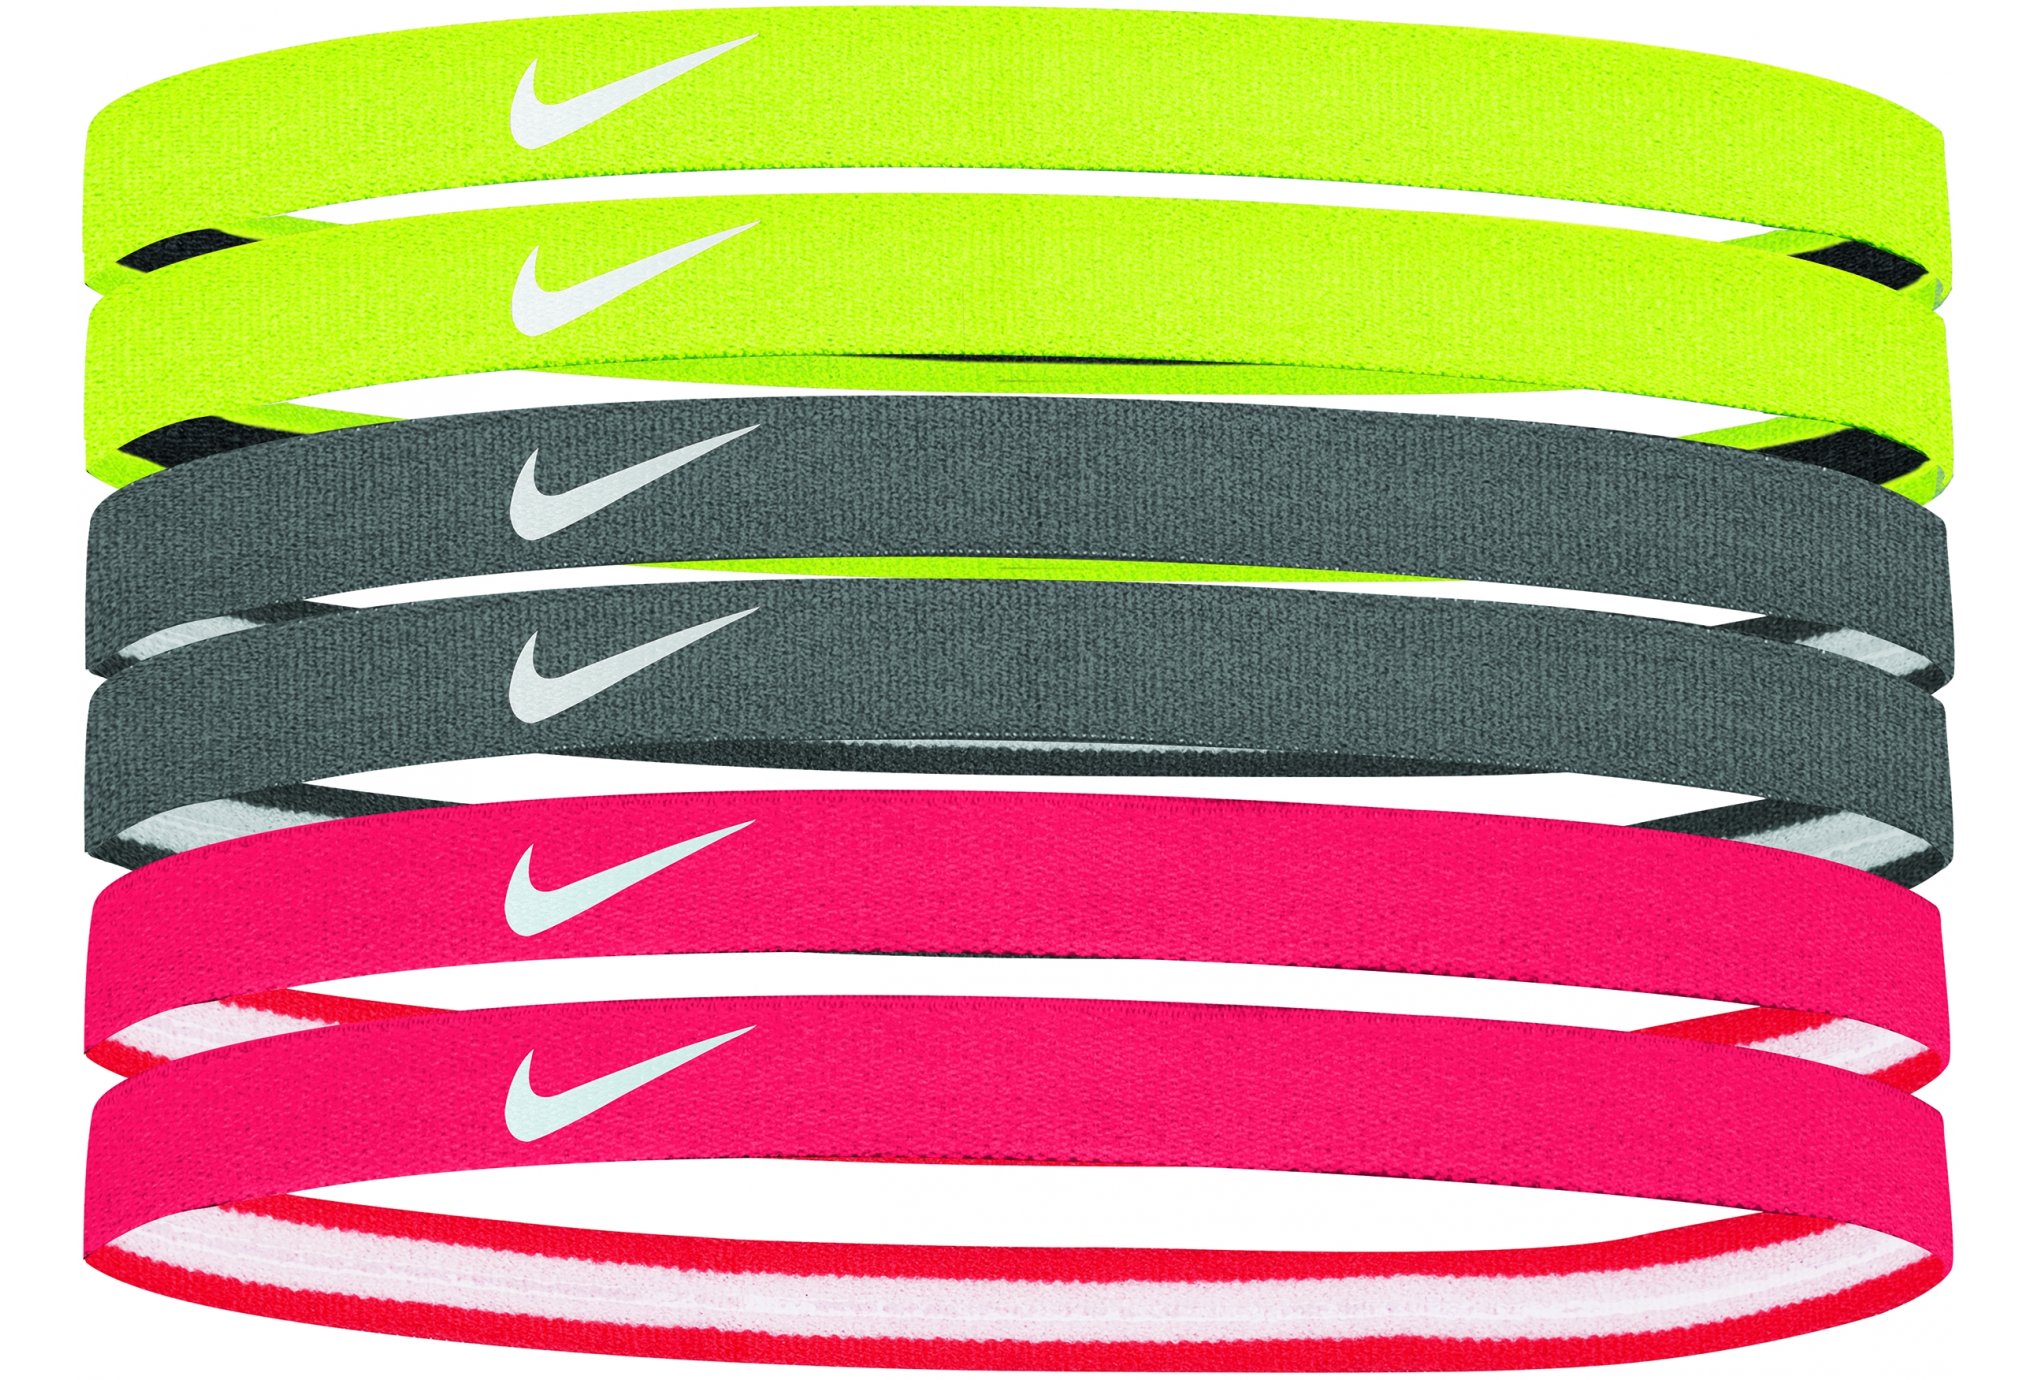 Резинка найк. Nike Swoosh Sport Headbands 6pk. Nike Headbands 6-Pack. Резинка для волос Nike Swoosh Sport Headbands 6 шт., njn92-714, различный цвет. Headbands Nike тонкая.